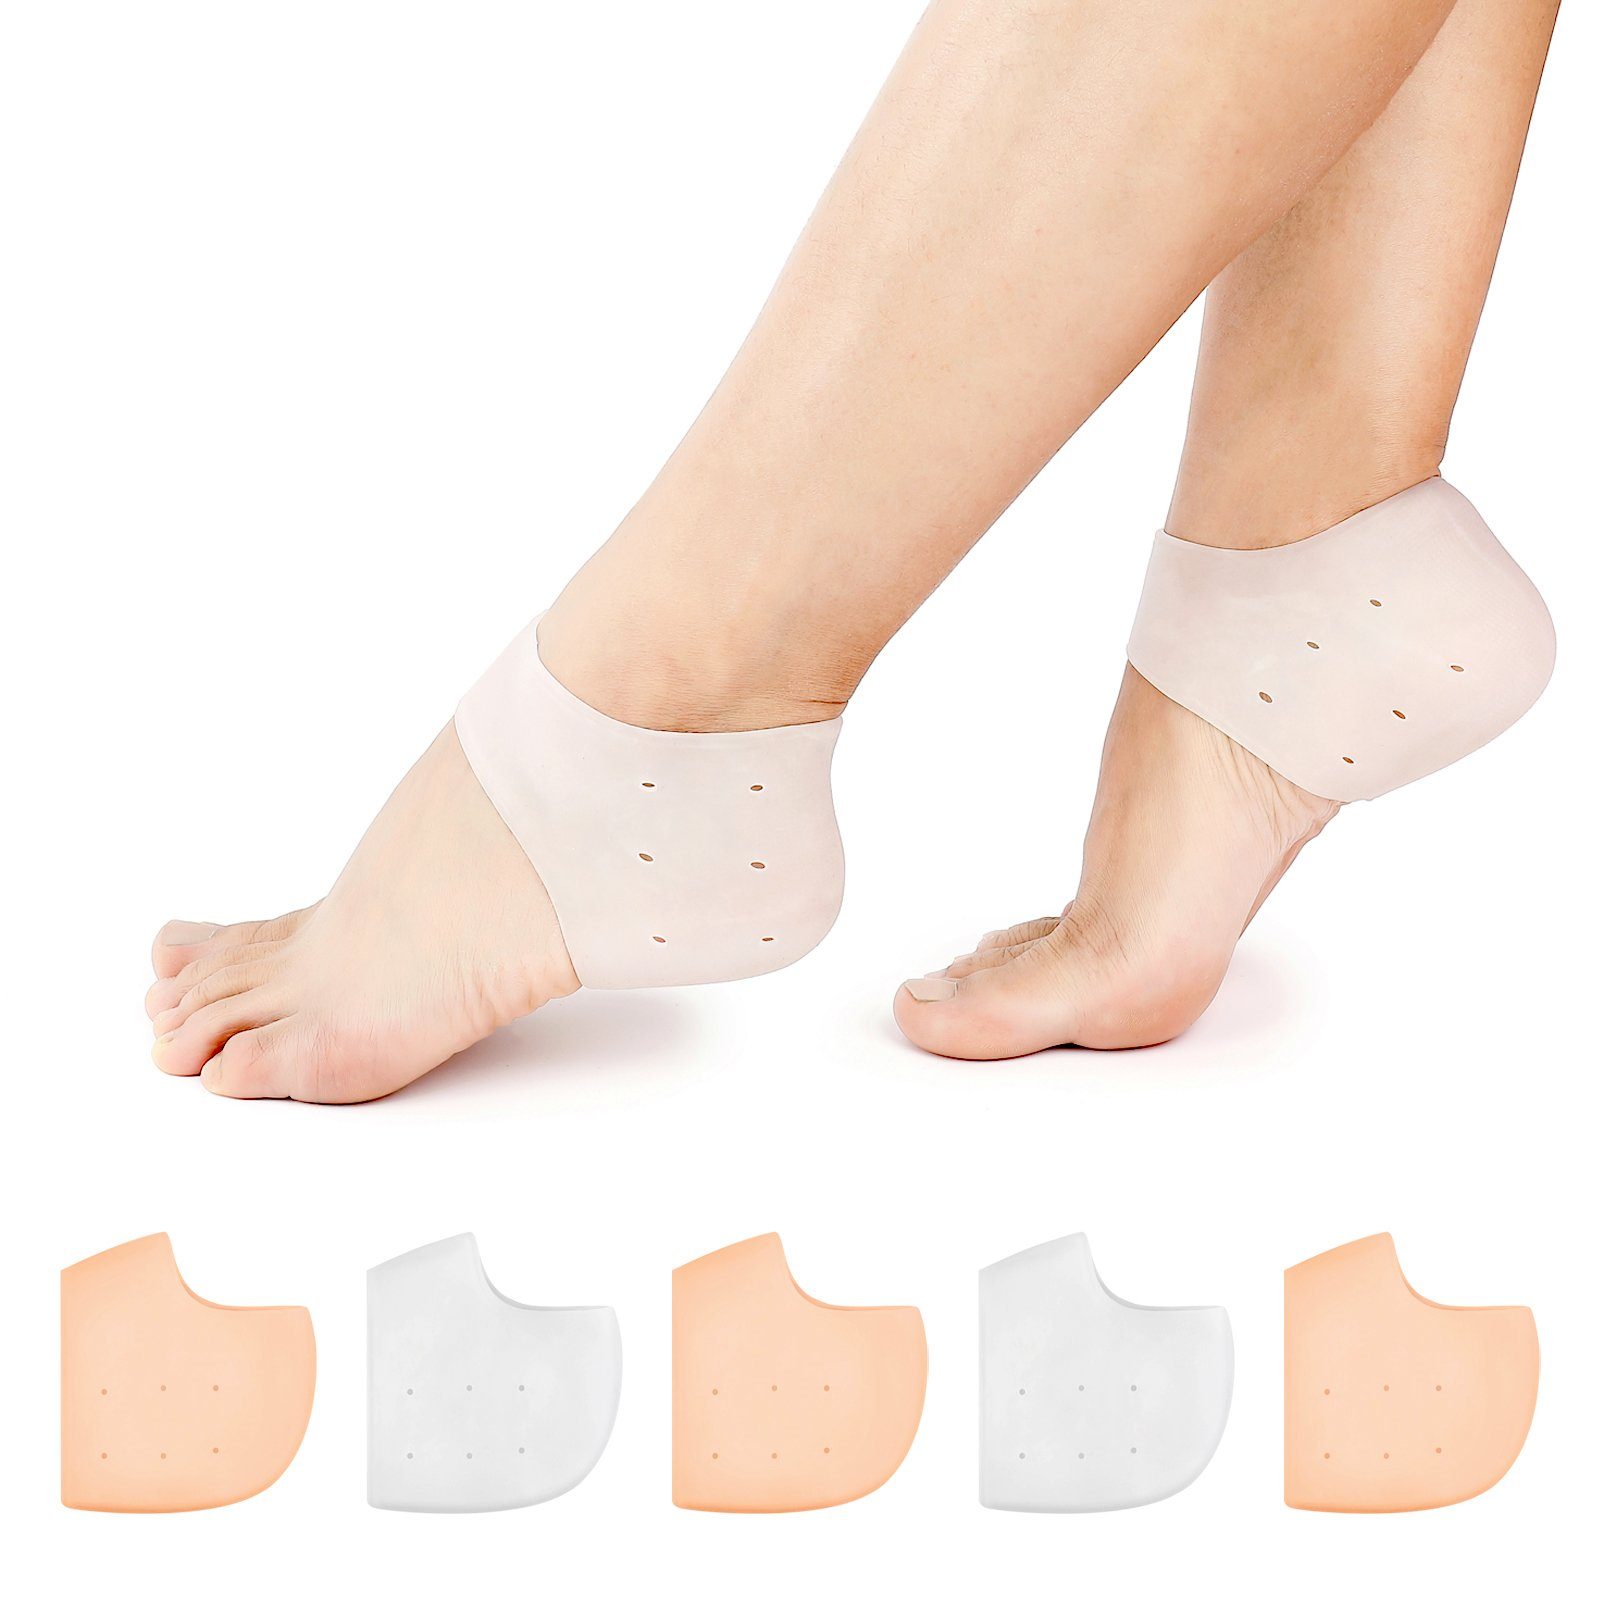 Details about   1 Paar Silikon Ferse Socken Schoner geknackt Fuß Einlagen Hautpflege Erhöhen DE 